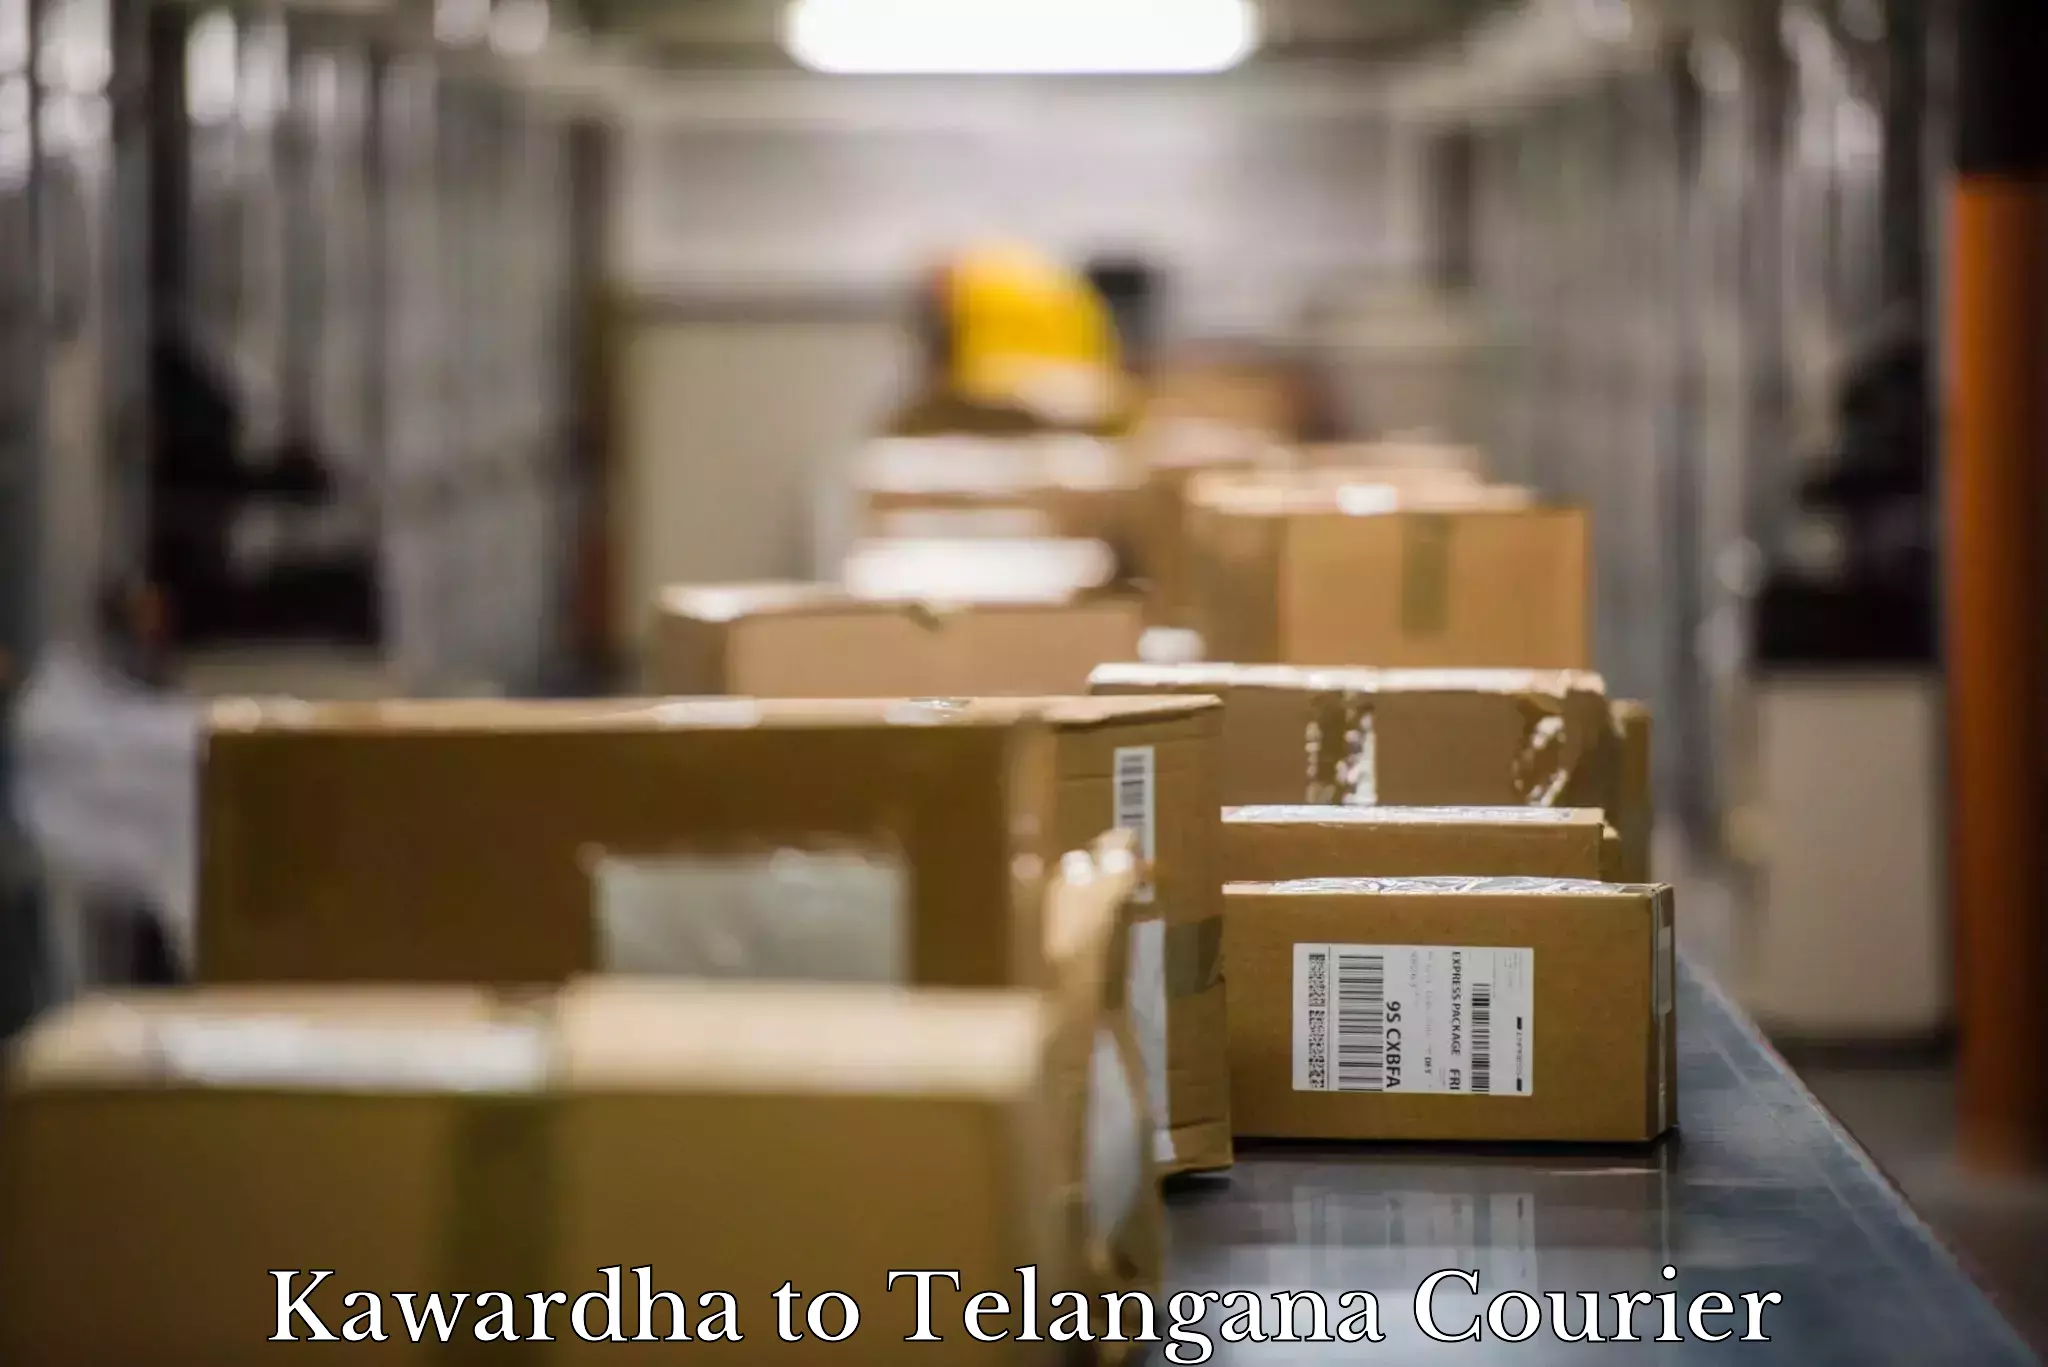 Furniture moving experts Kawardha to Thungathurthi